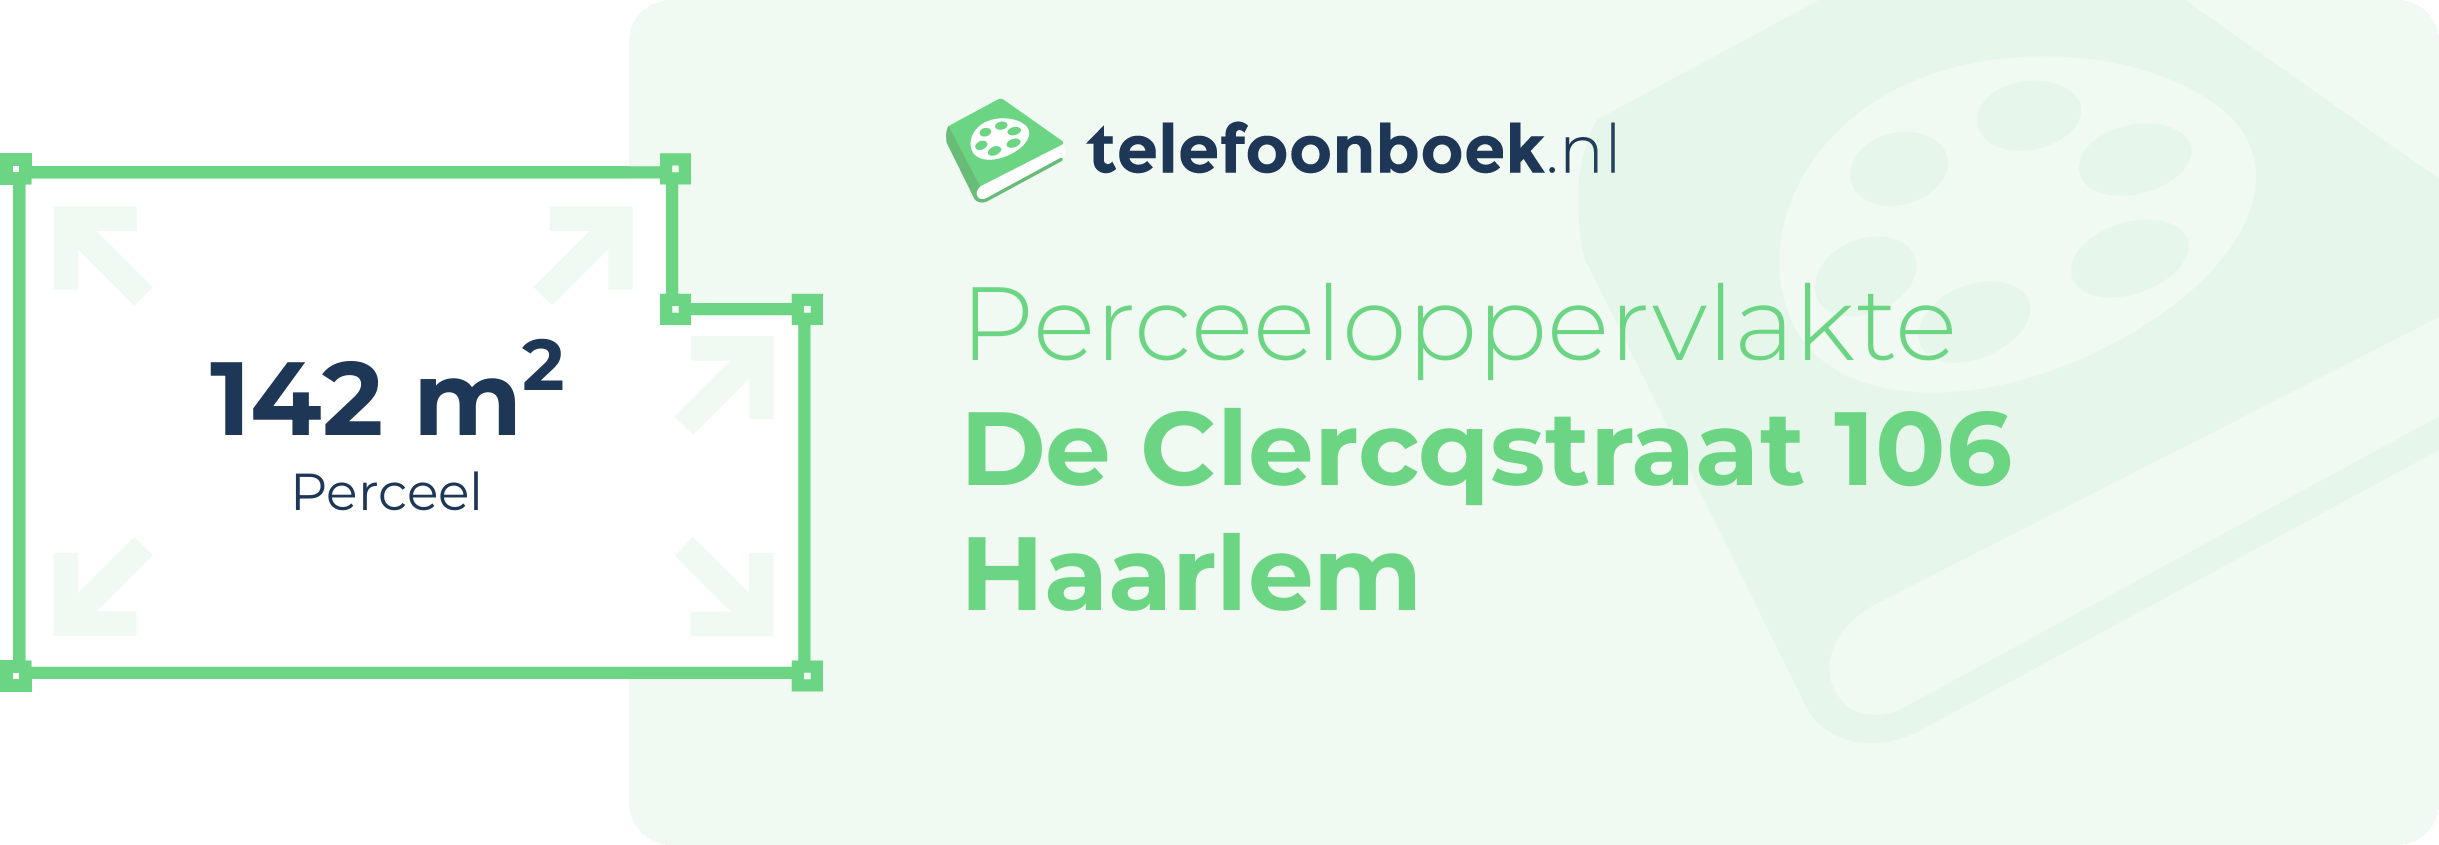 Perceeloppervlakte De Clercqstraat 106 Haarlem